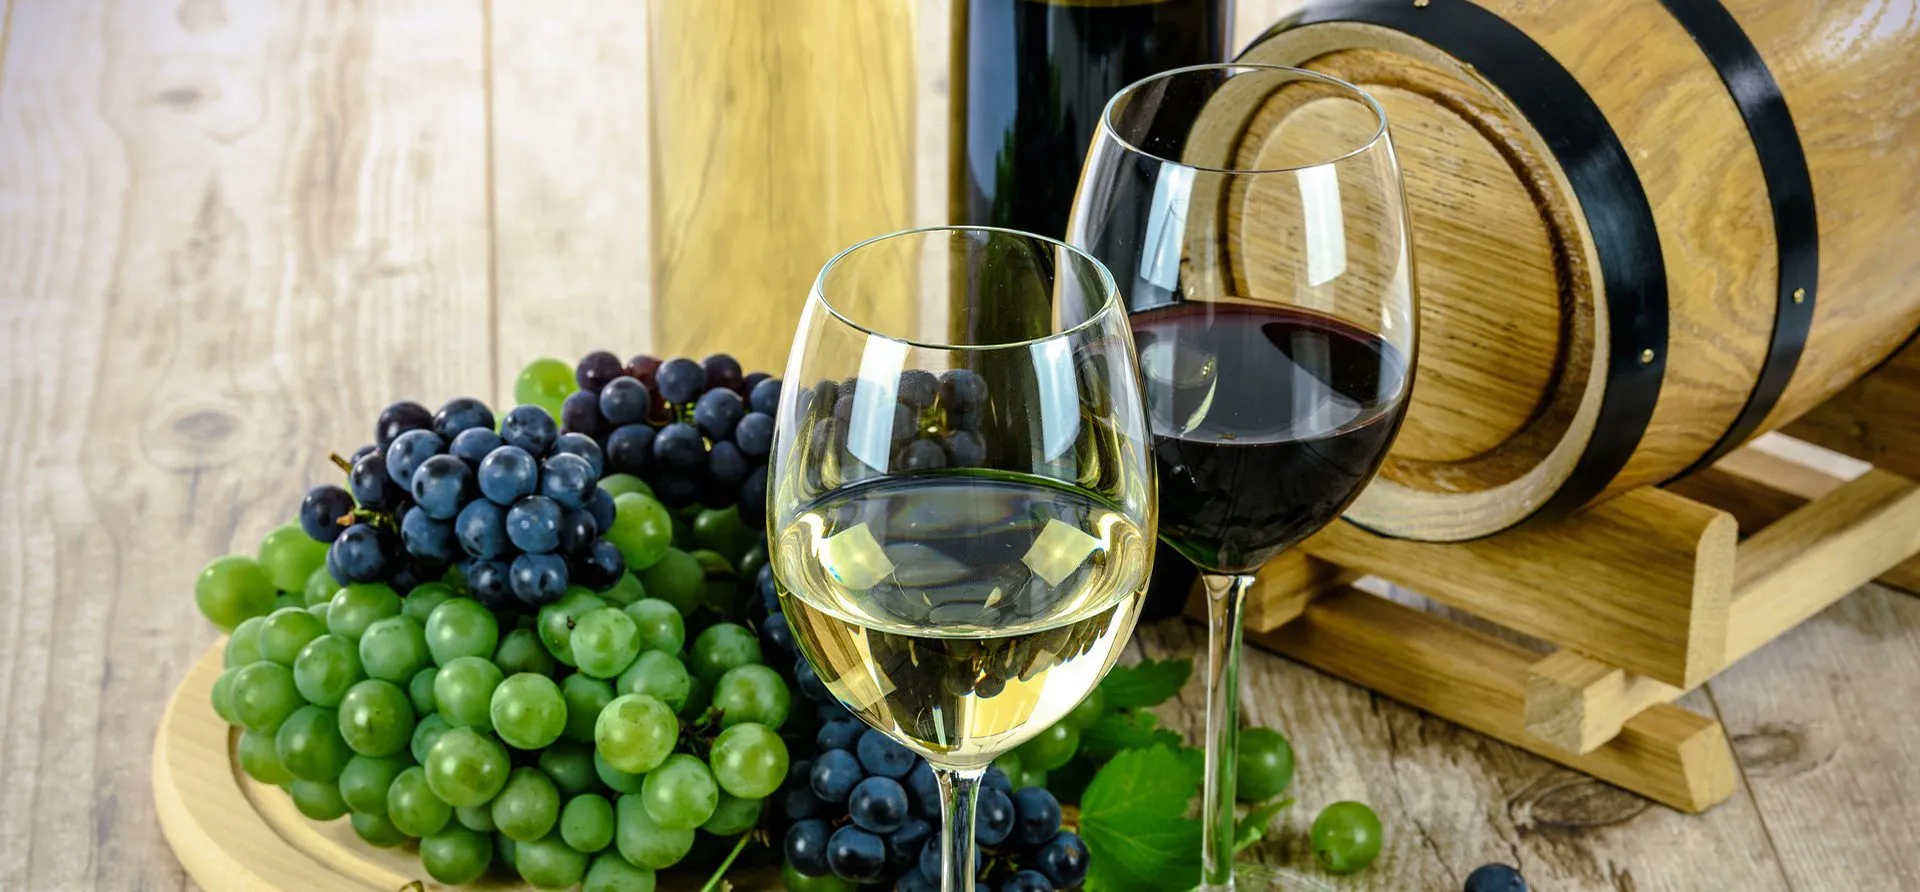 dégustation de vins ljubljana vin rouge et blanc barell